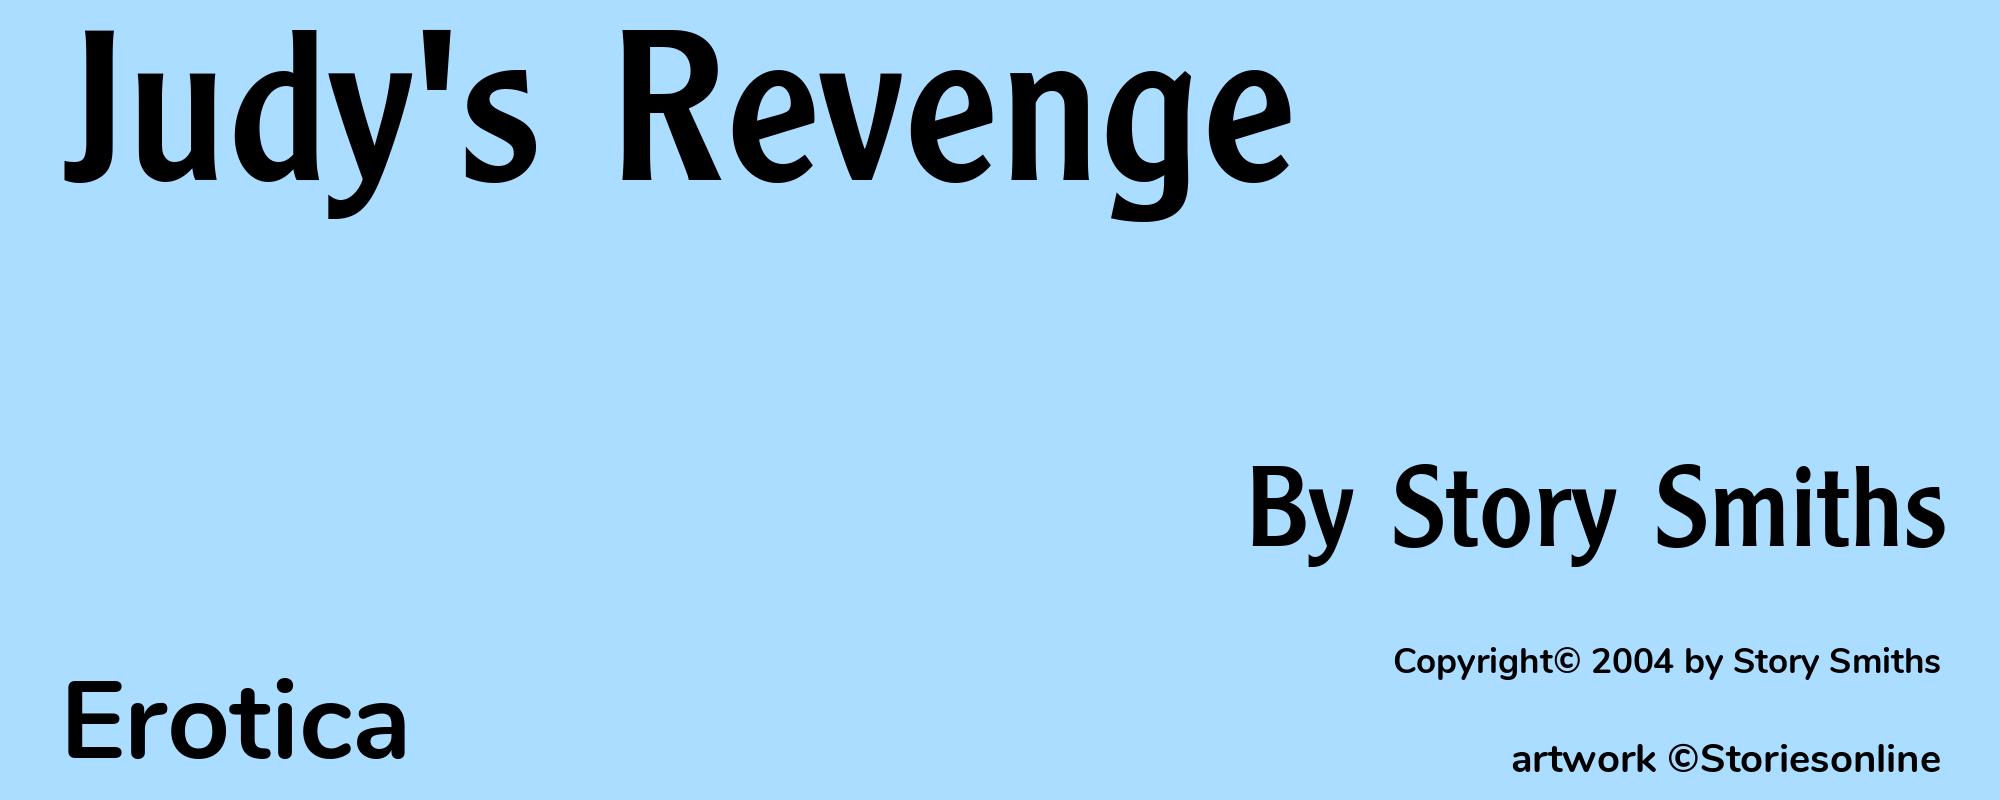 Judy's Revenge - Cover